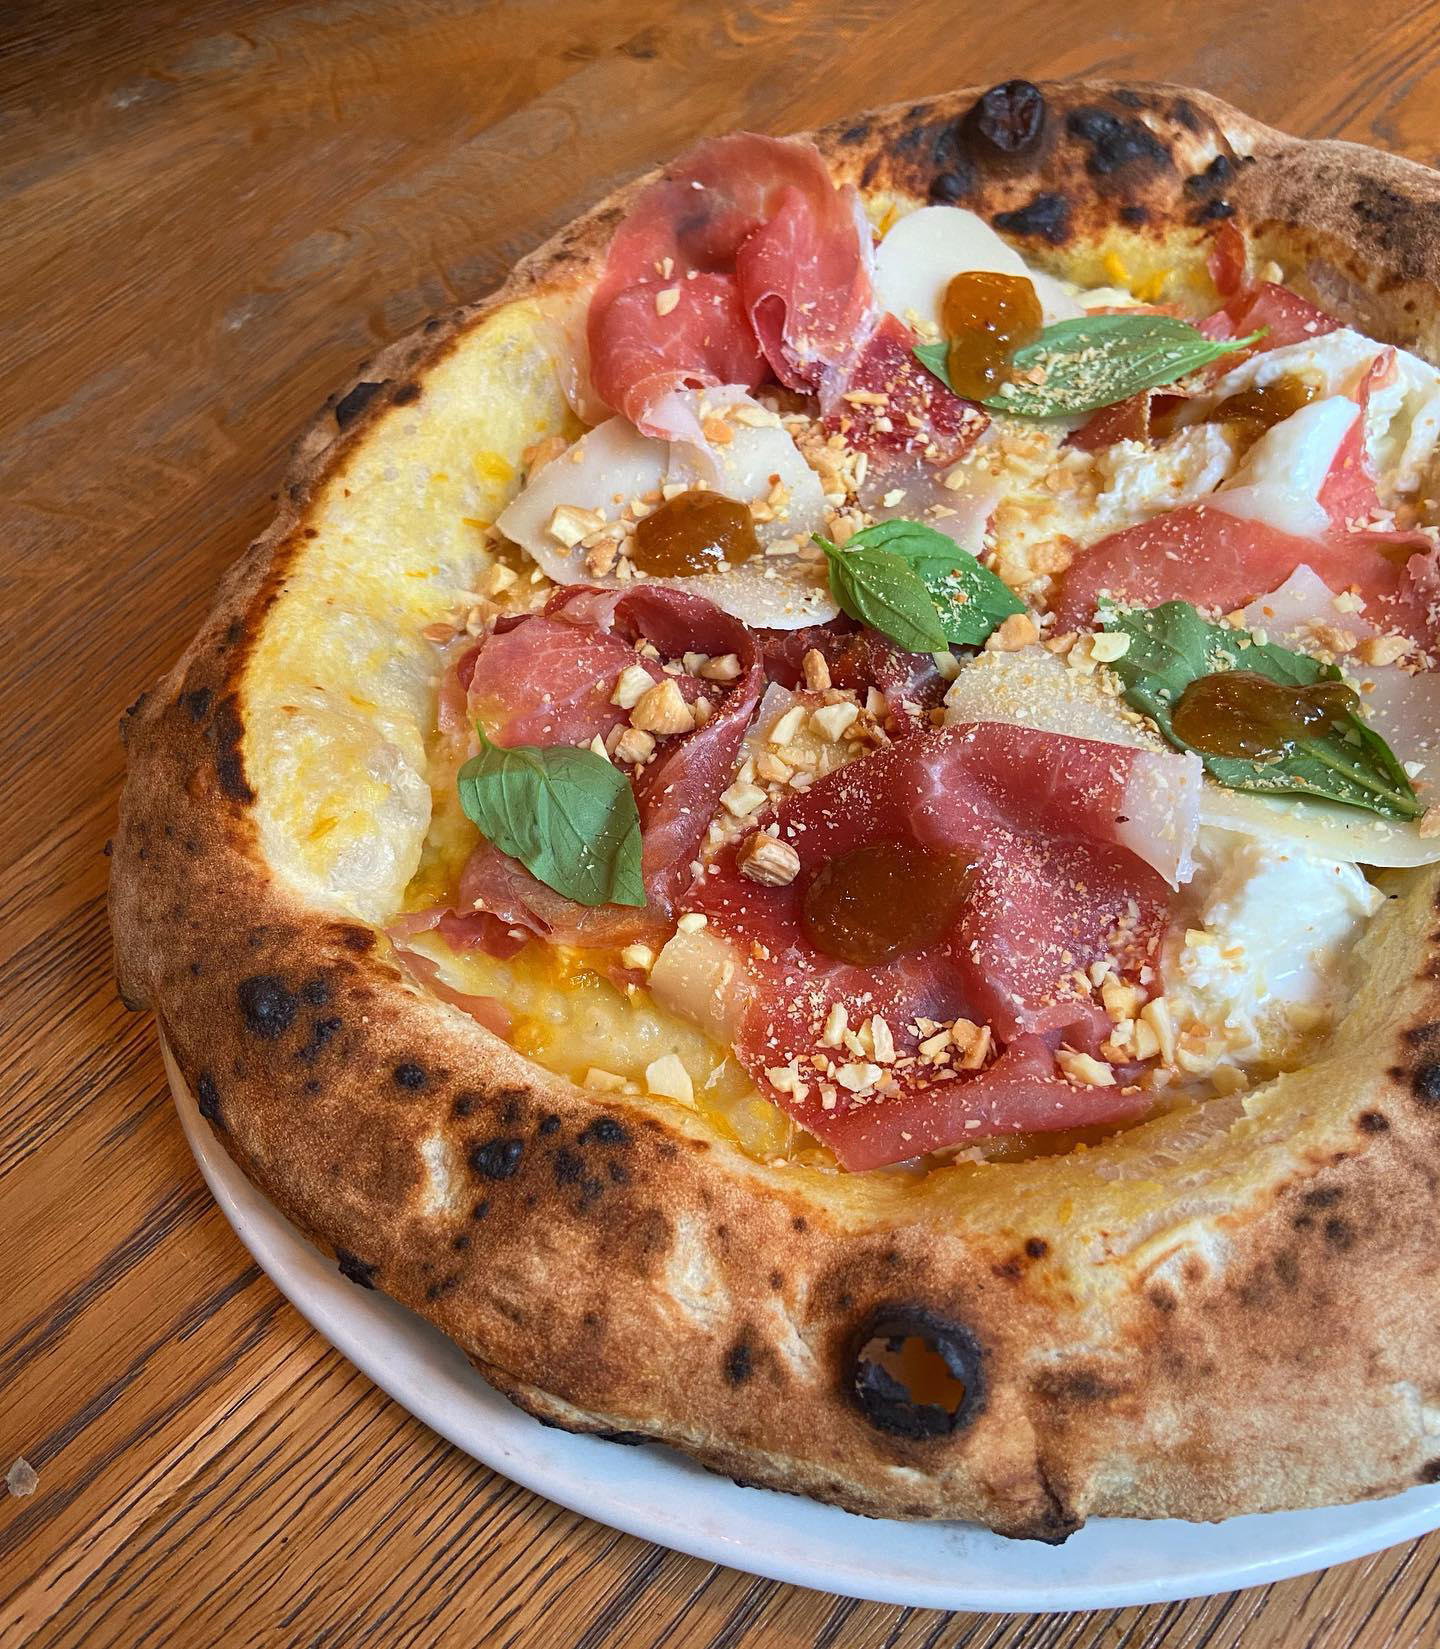 Peppe pizzeria napoletana - Nous sommes fermés aujourd’hui et demain dans tous nos restaurants